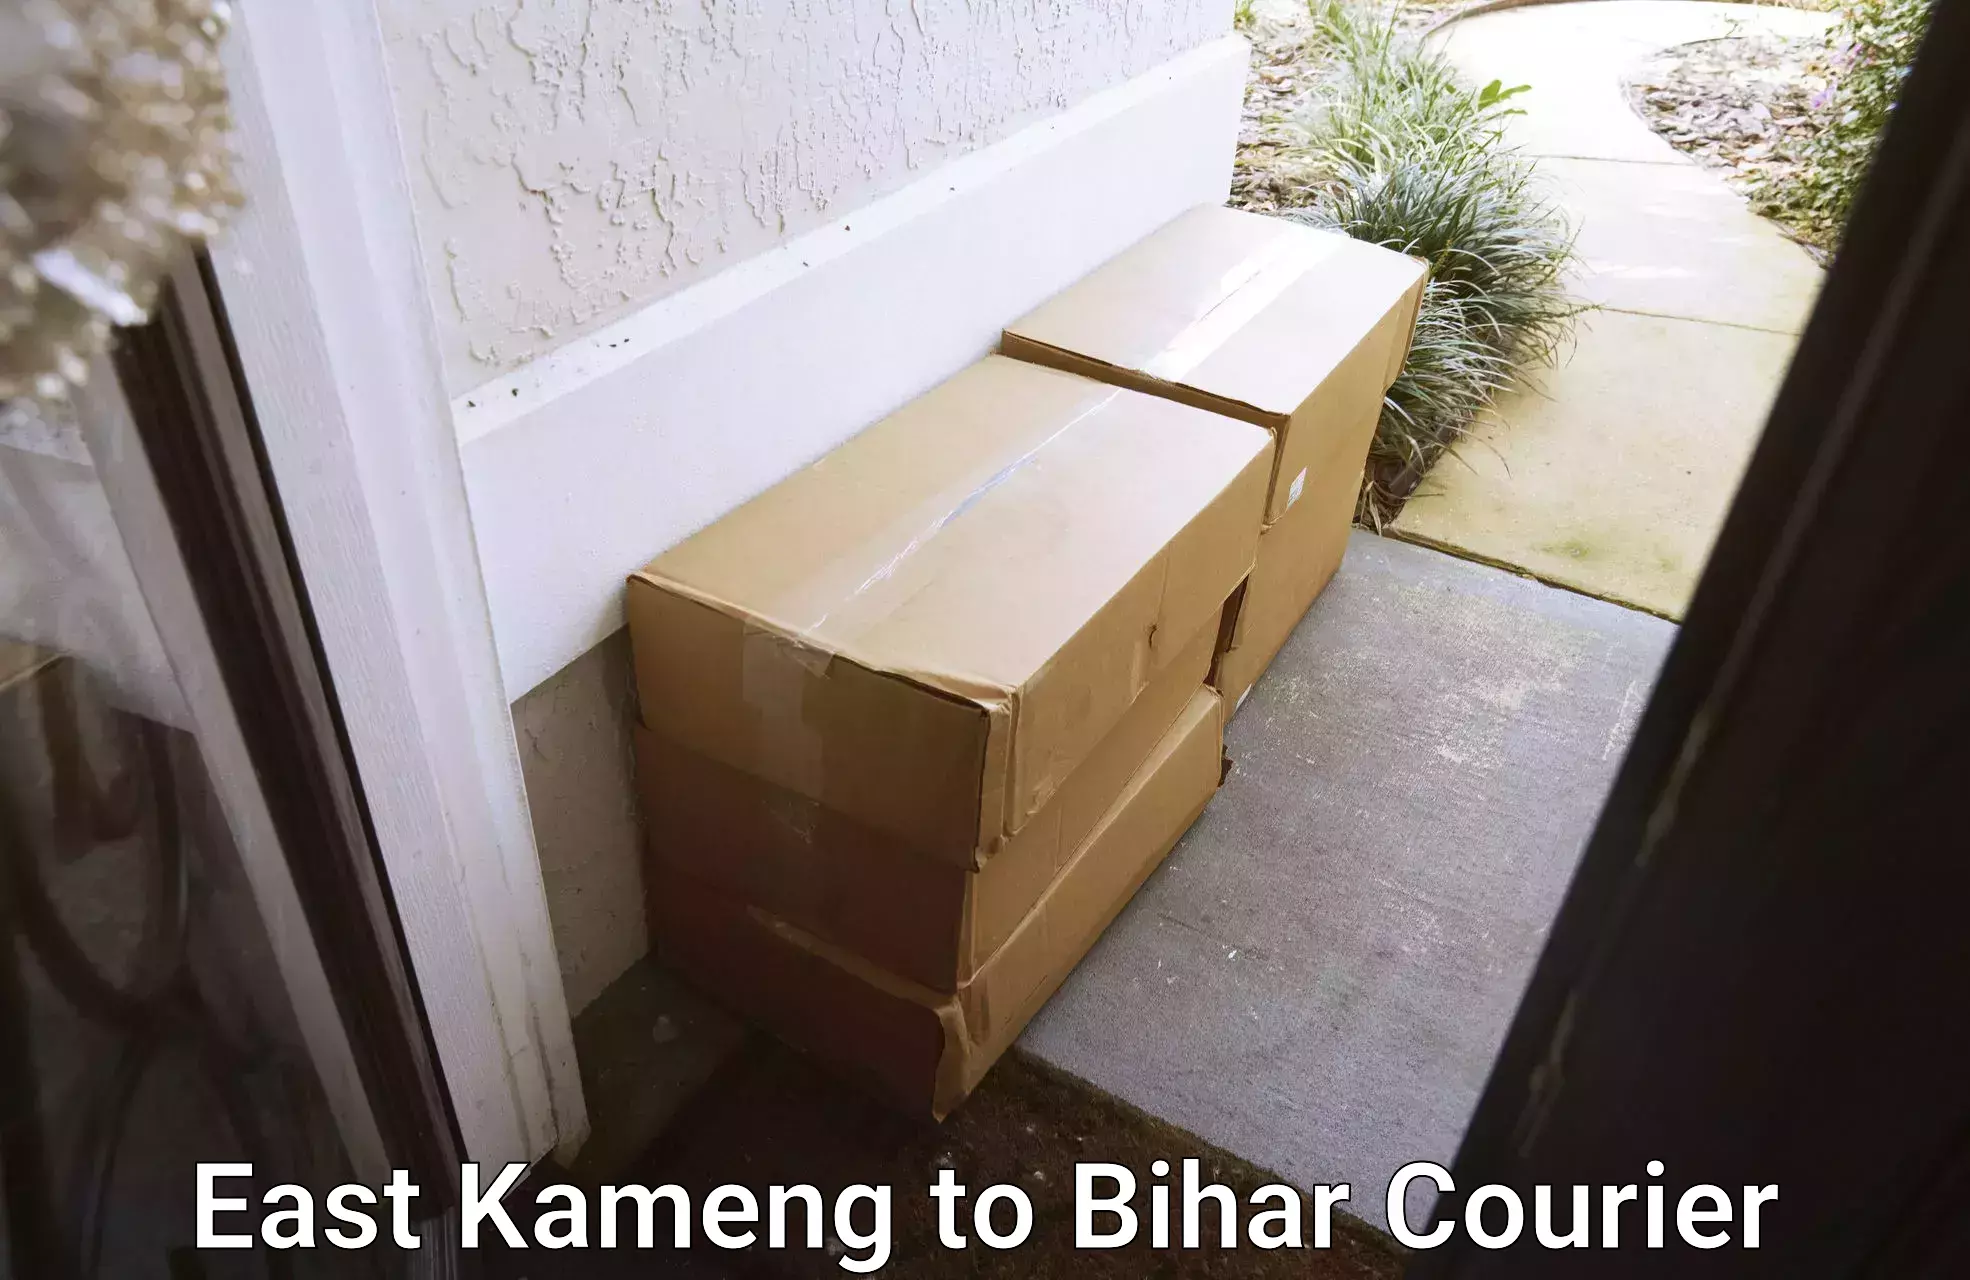 Urgent courier needs East Kameng to Bihar